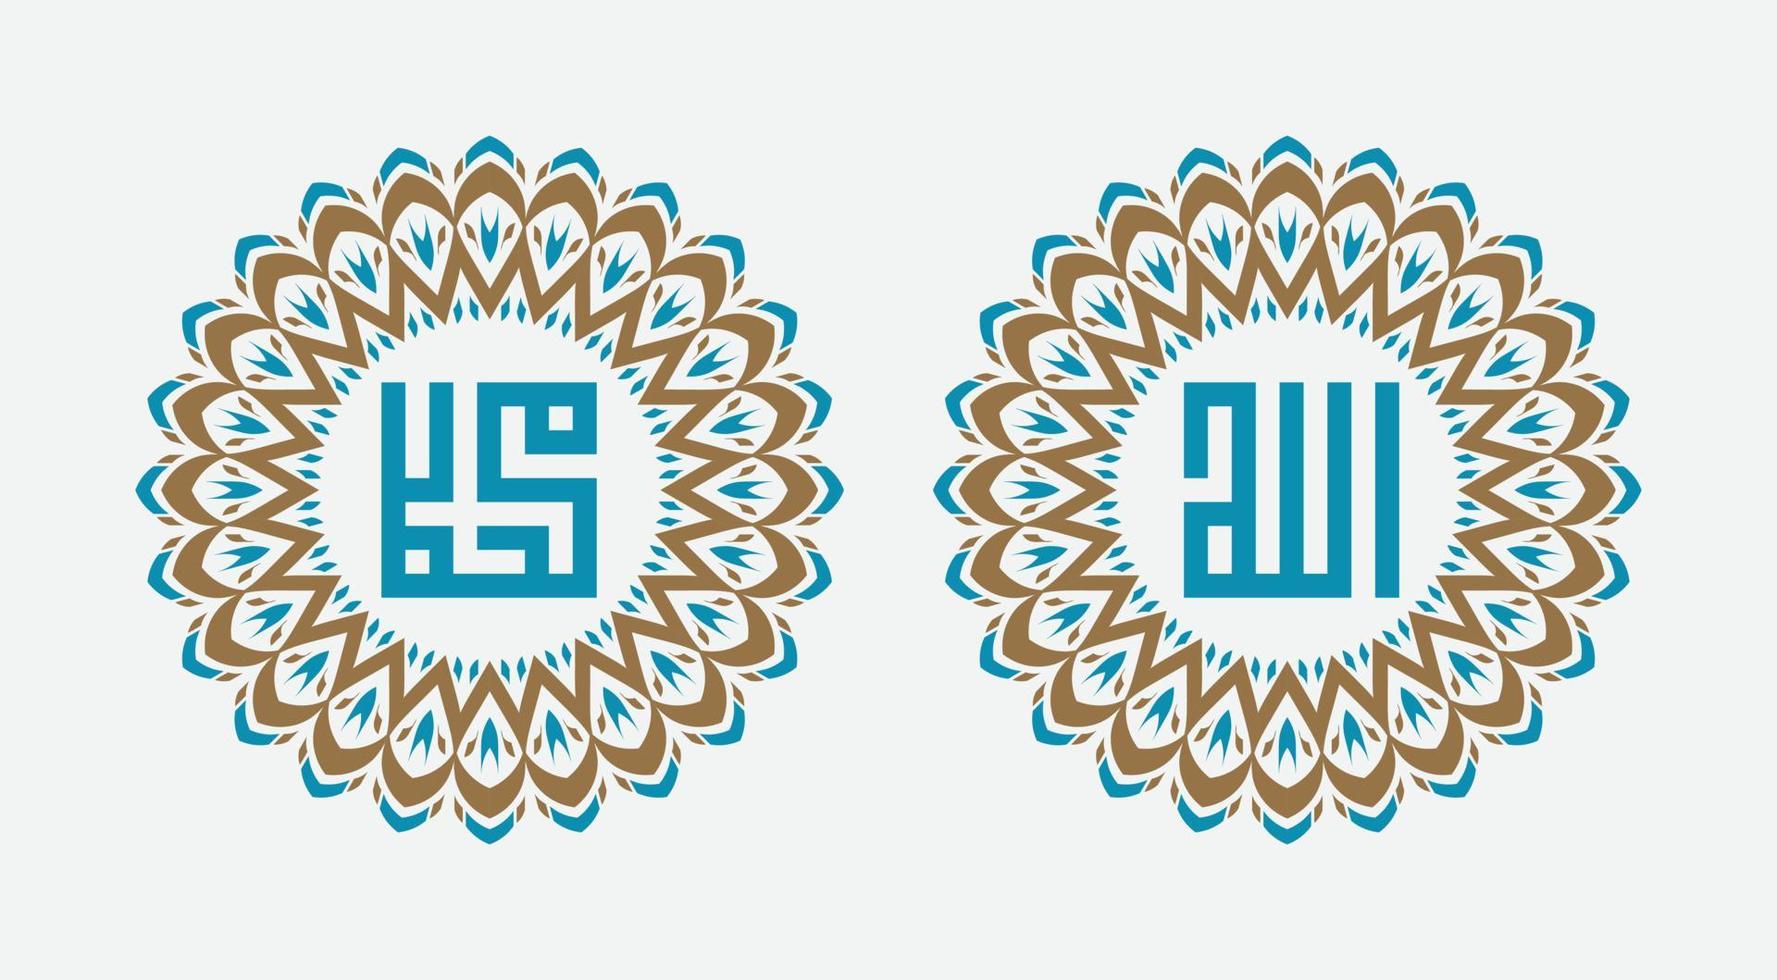 caligrafía de allah y el profeta muhammad. adorno sobre fondo blanco vector